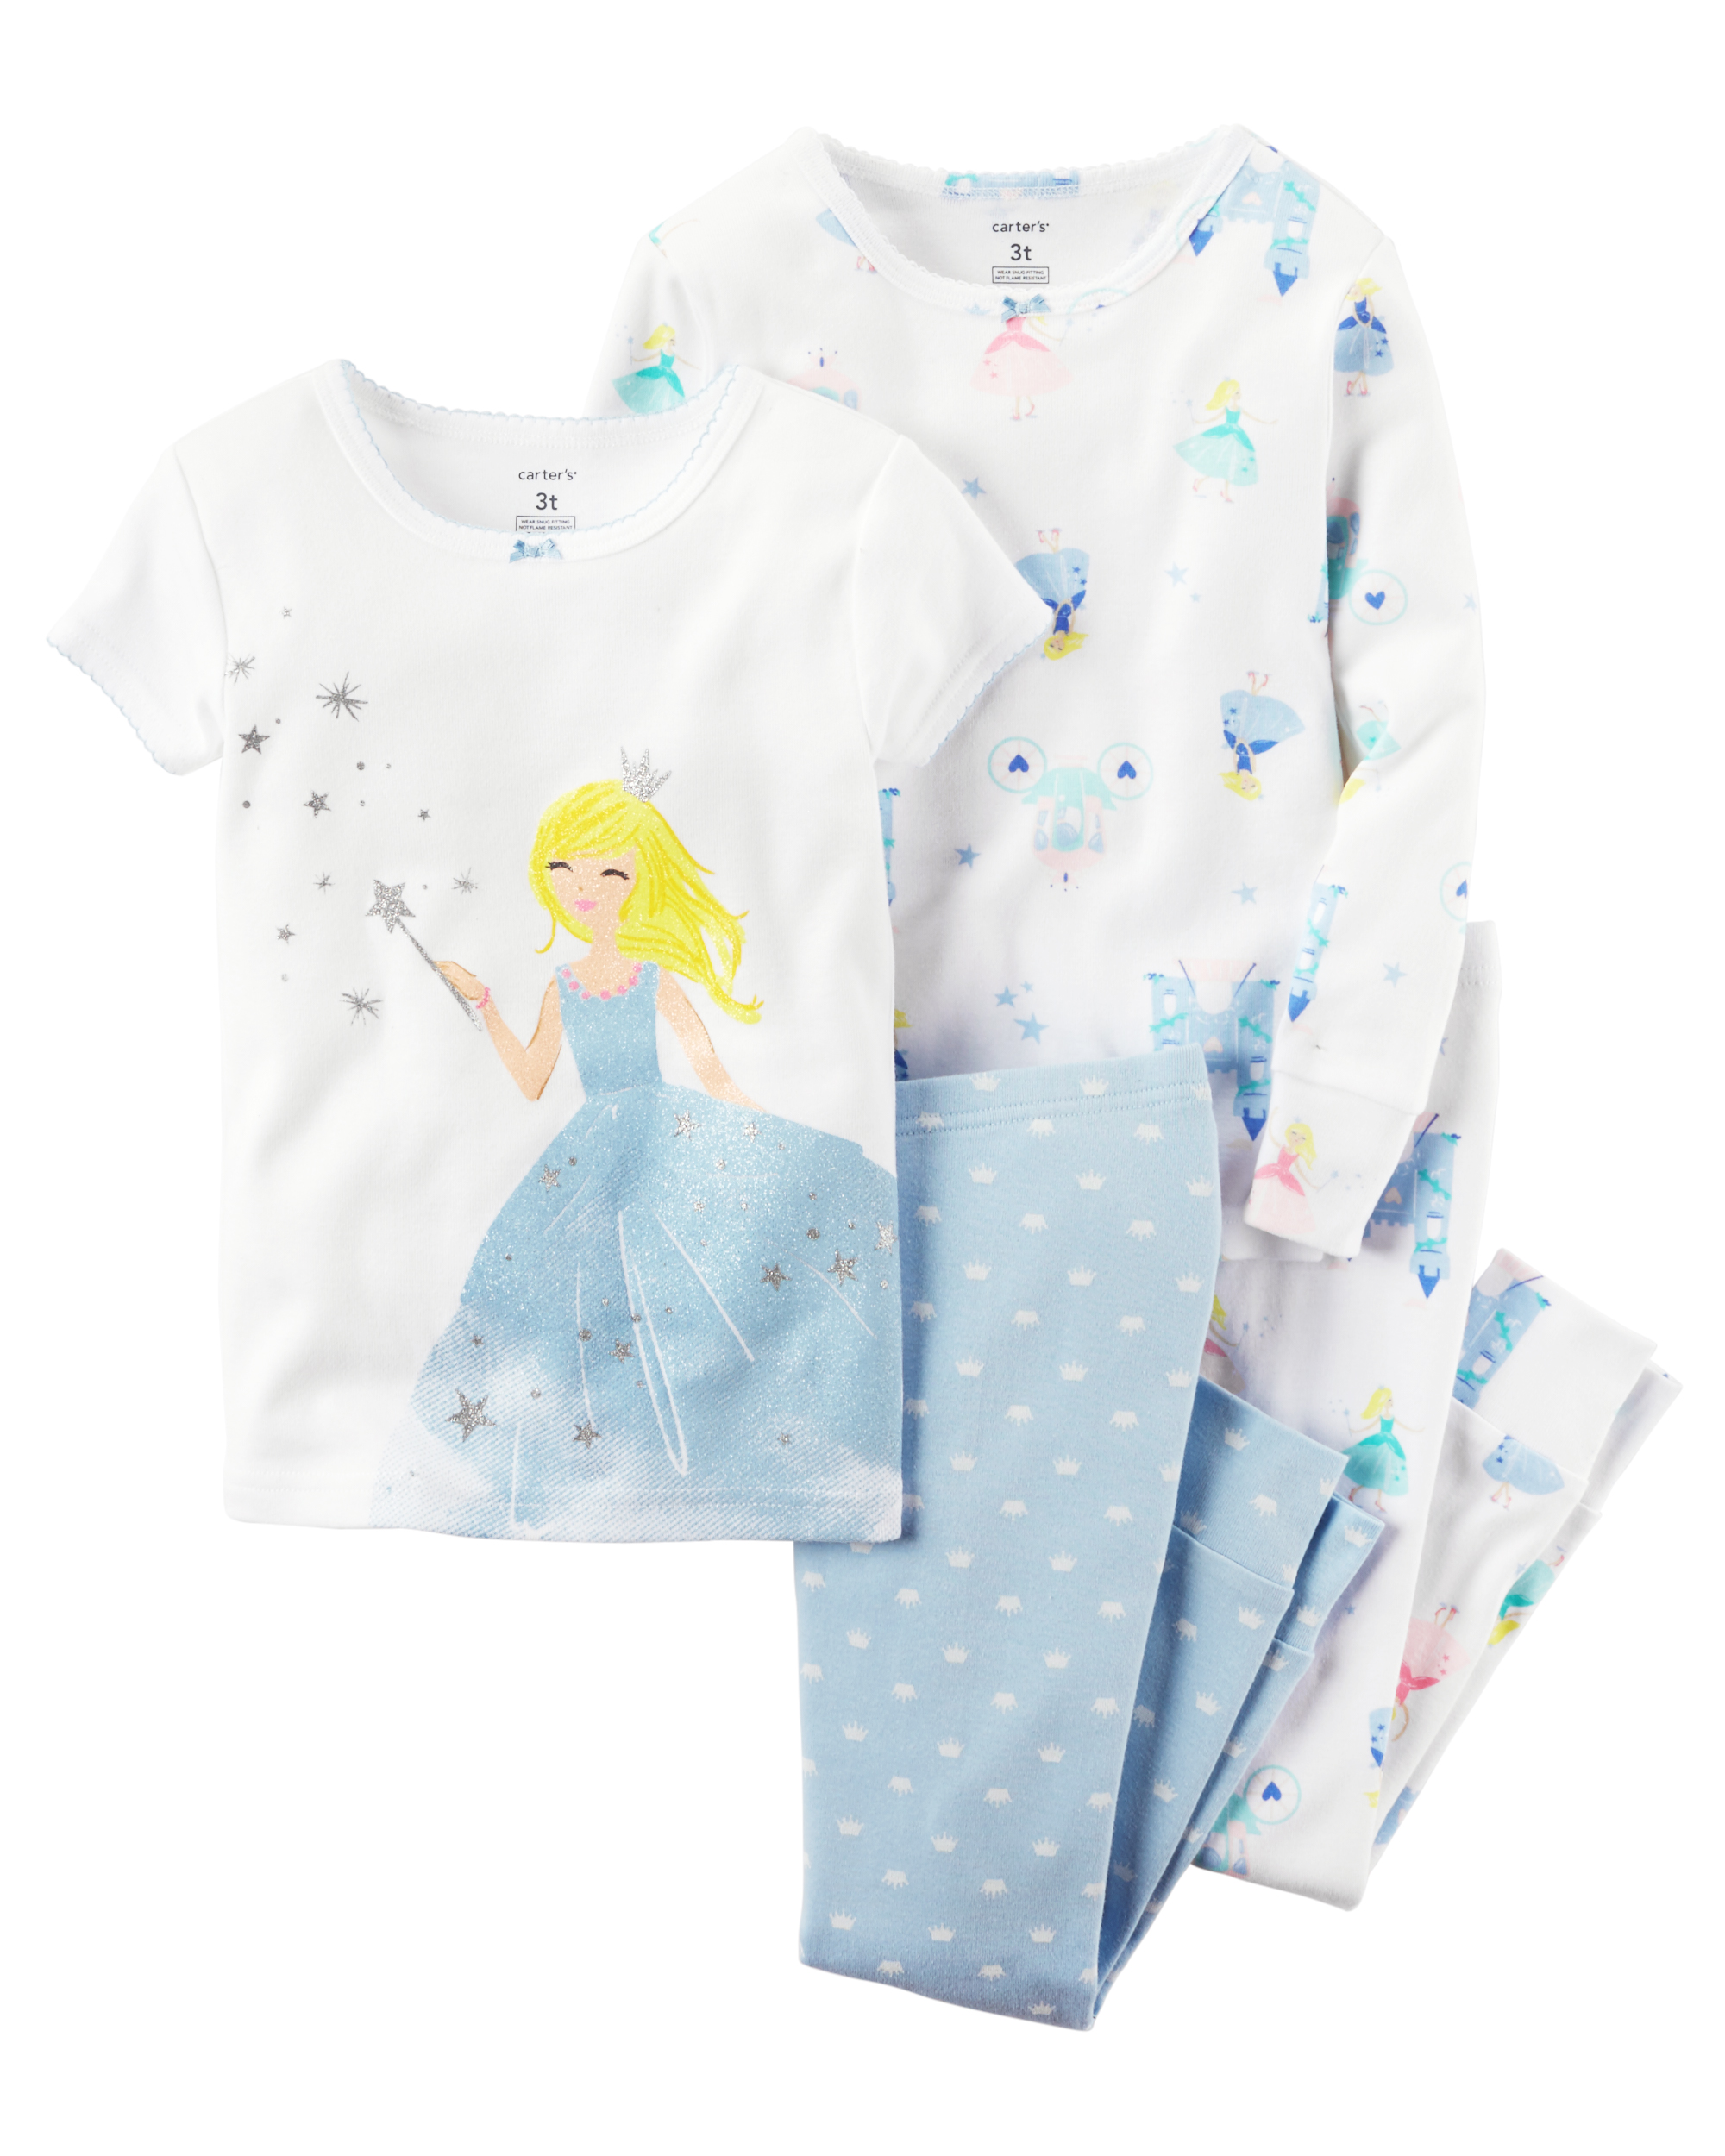 Carter's Infant & Toddler Girls' 4-Pc. Pajama Set - Princess